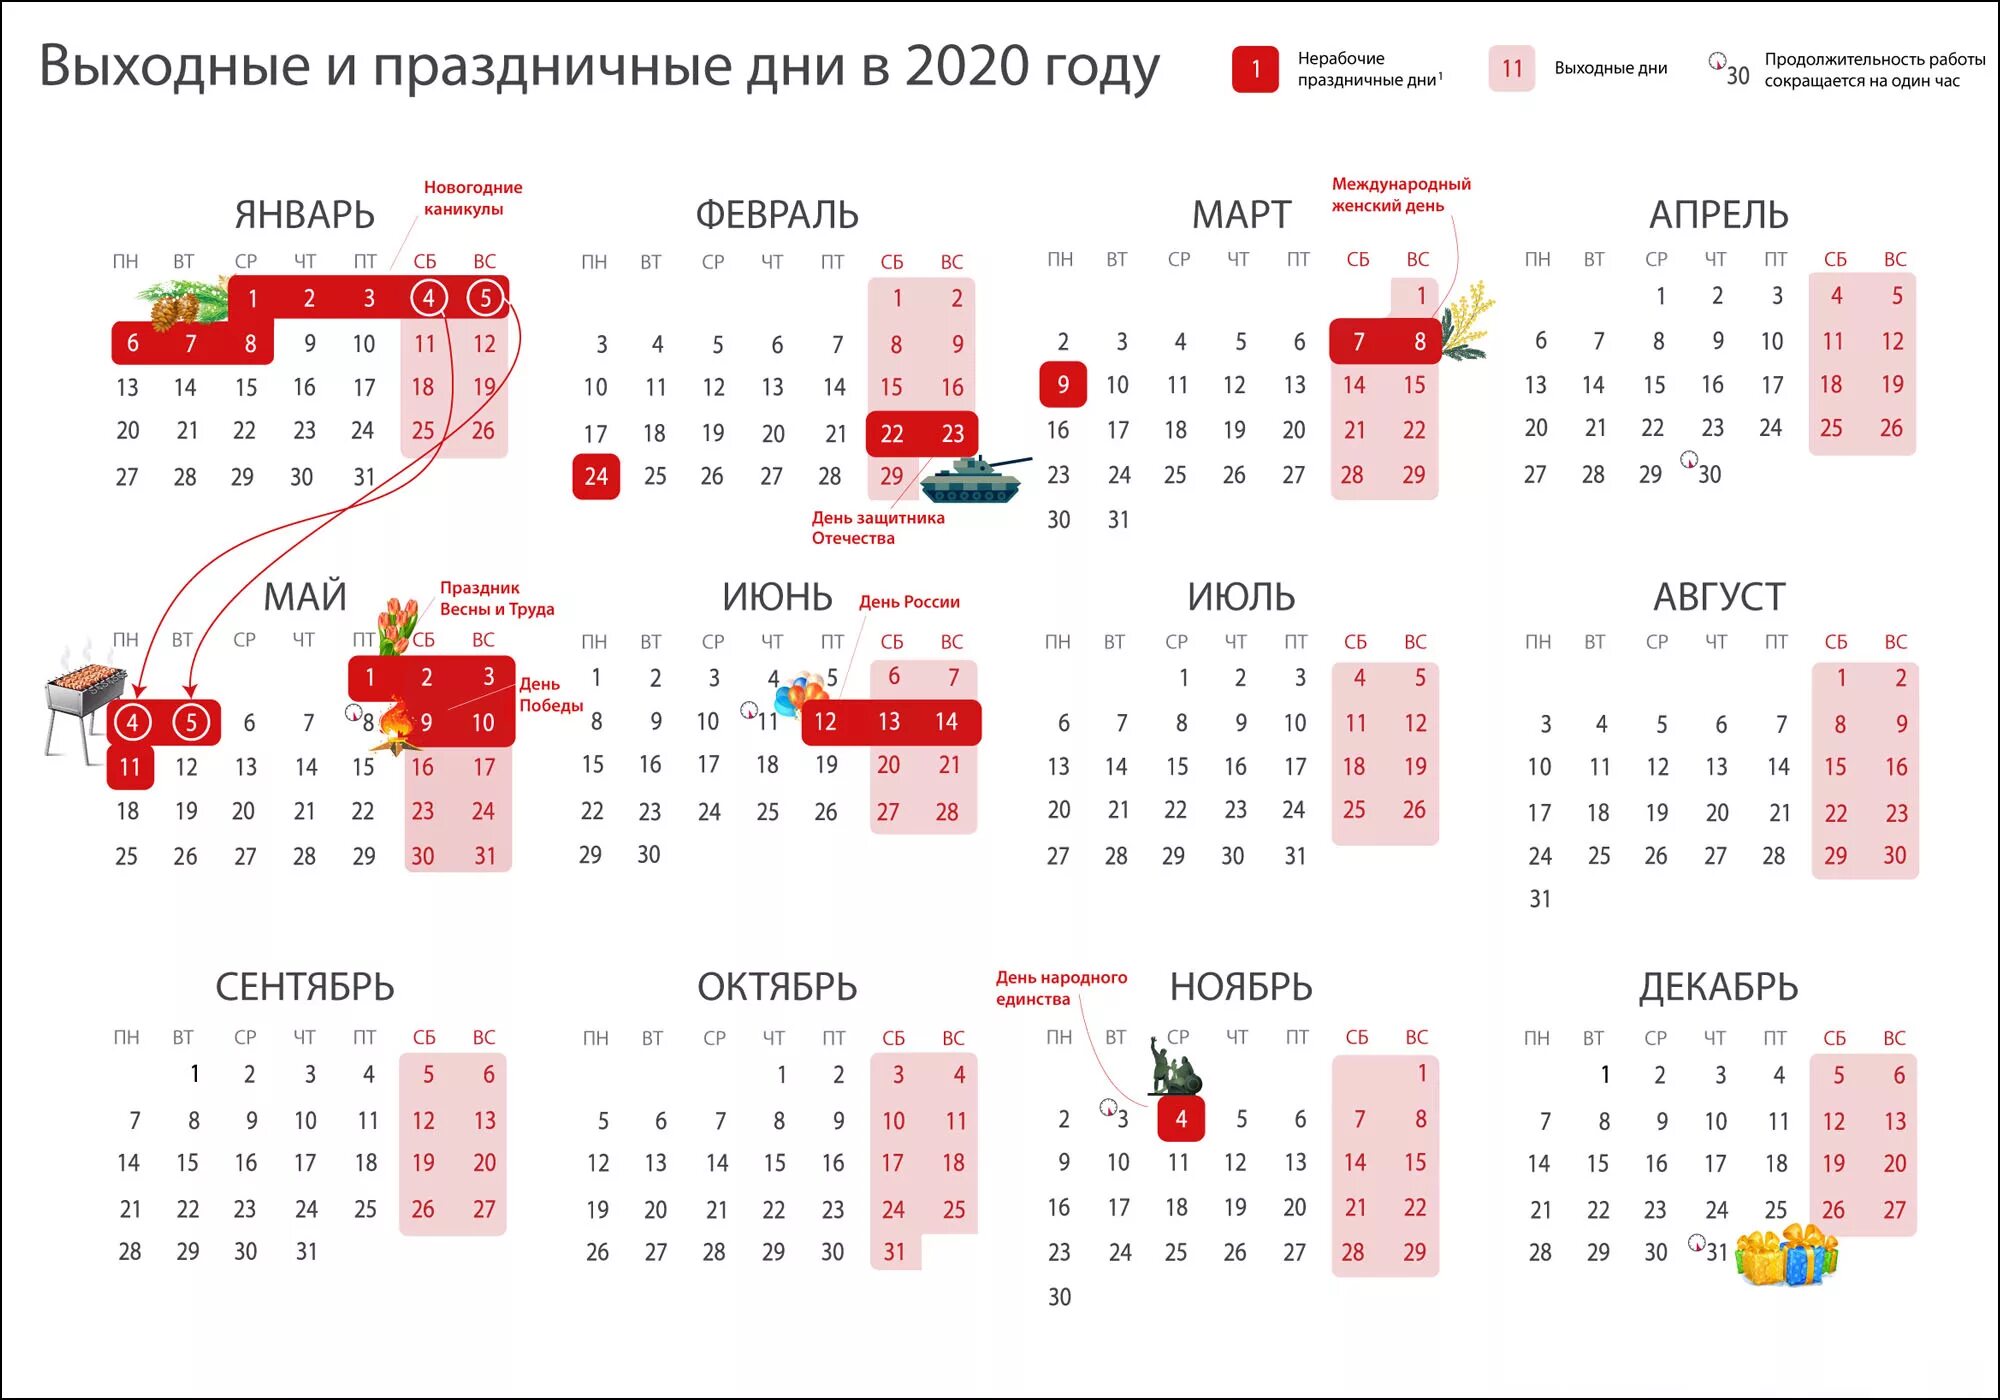 Праздники и выходные дни в 2020 году. Календарь рабочих дней 2020 год. Выходные и праздничные дни в 2020 году в России календарь. Календарь 2020 года производственный праздничными днями и выходными. Сколько выходных осталось до 1 июня